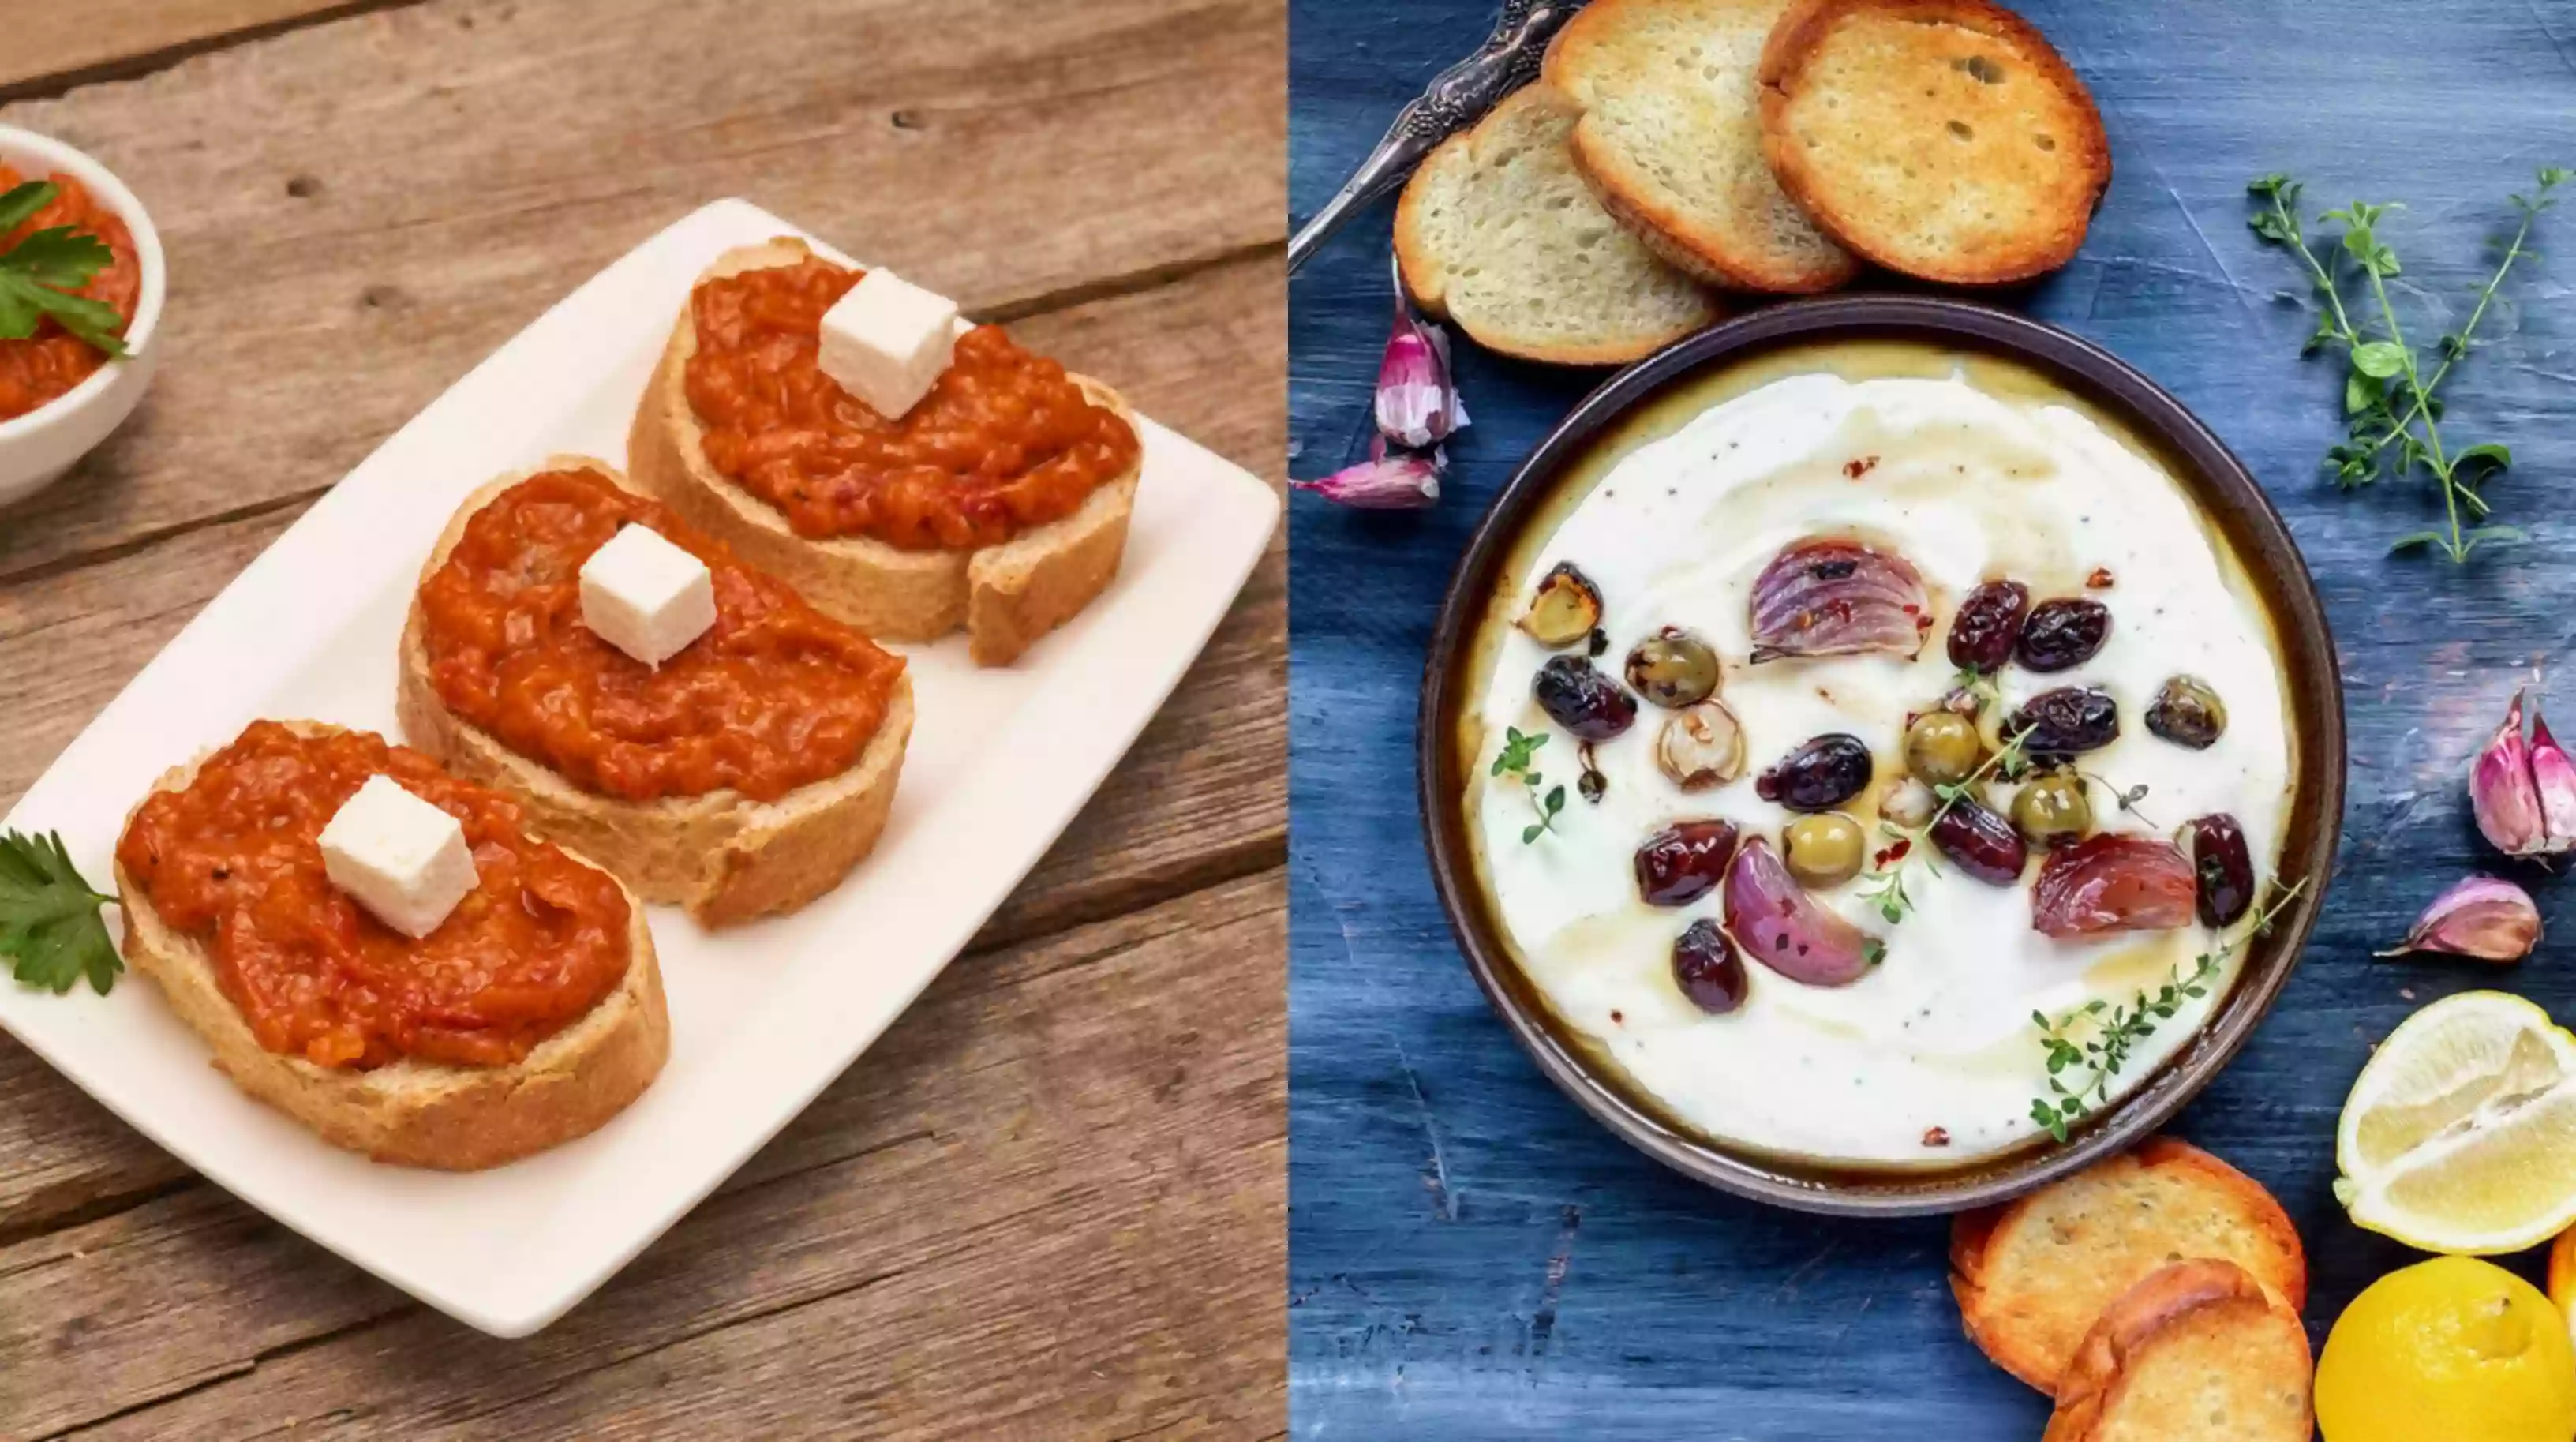 Graikų dievų maistas ant jūsų stalo: fetos sūrio užtepų receptai tiks net išrankiausiems